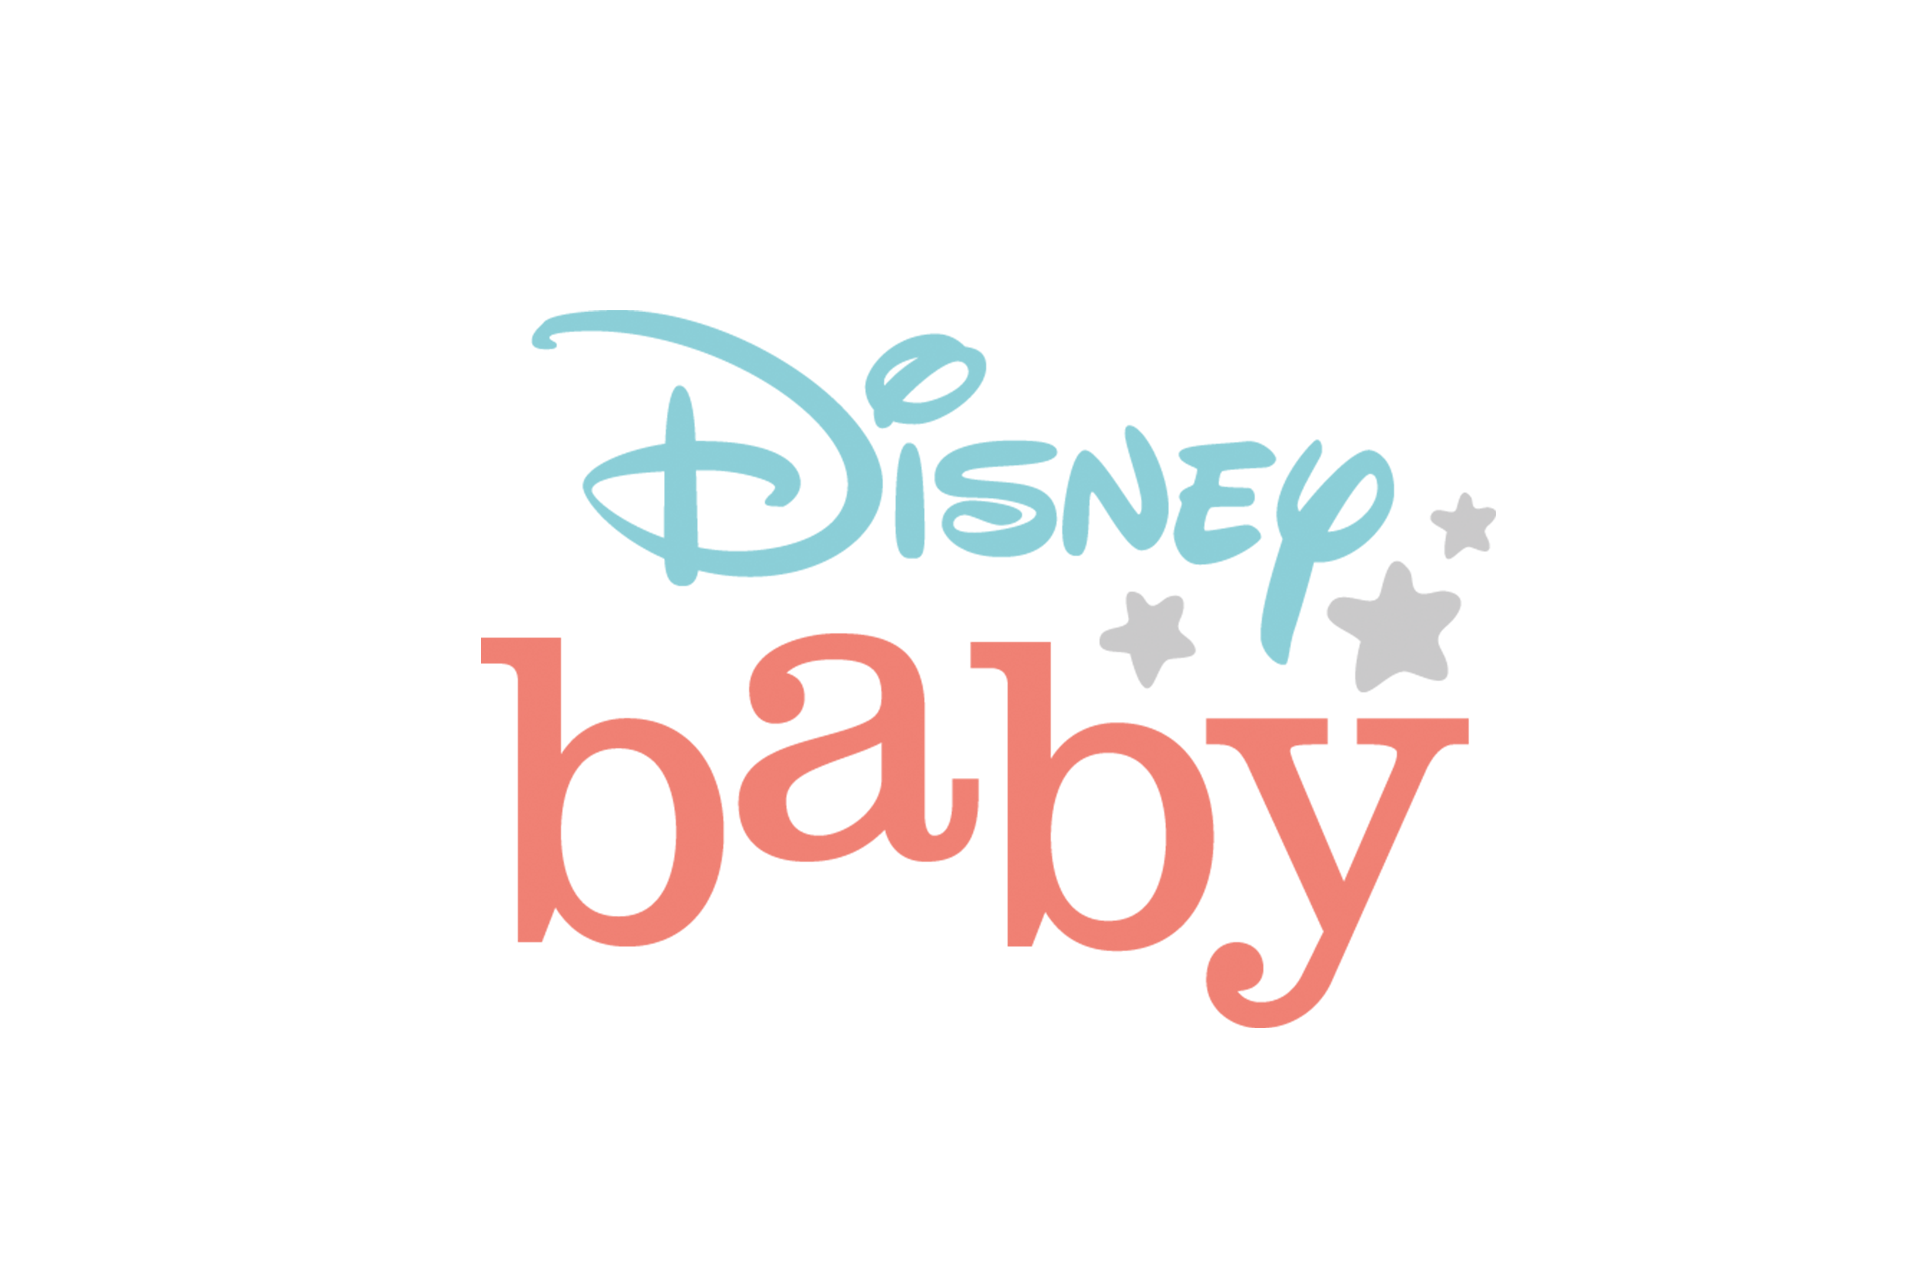 Disney Baby